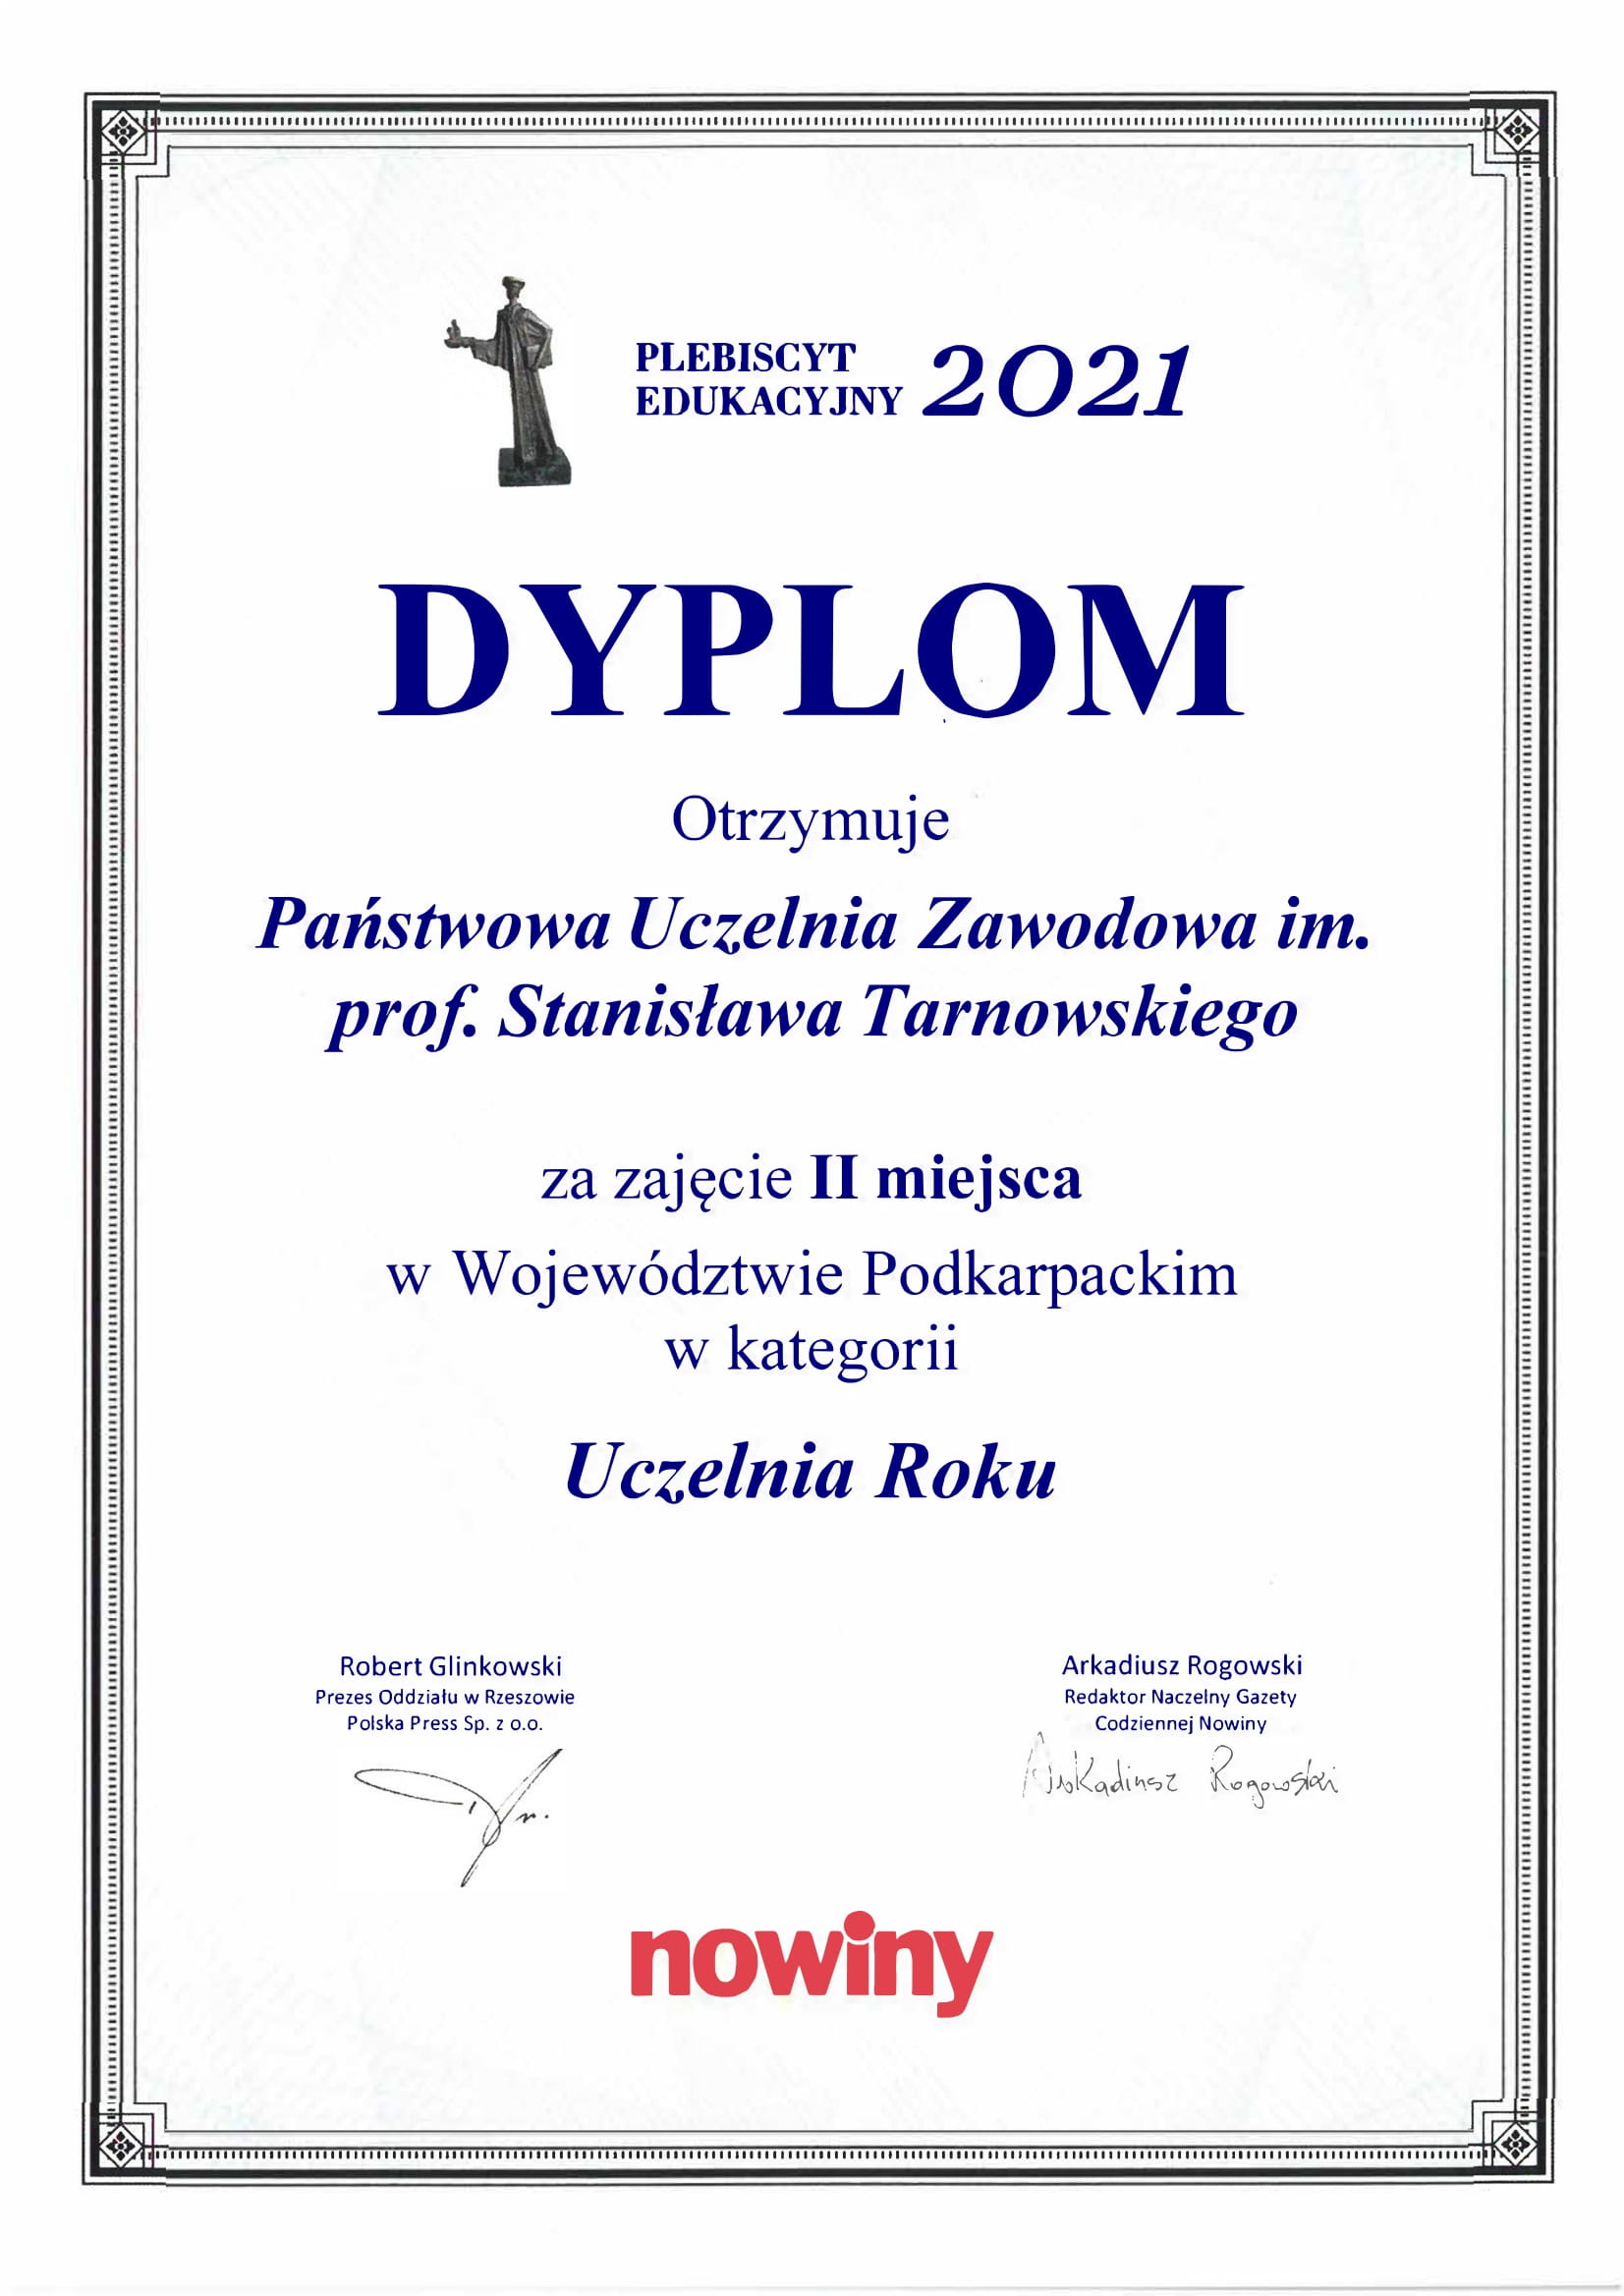 Dyplom dla PUZ w Tarnobrzegu w Plebiscycie Edukacyjnym 2021